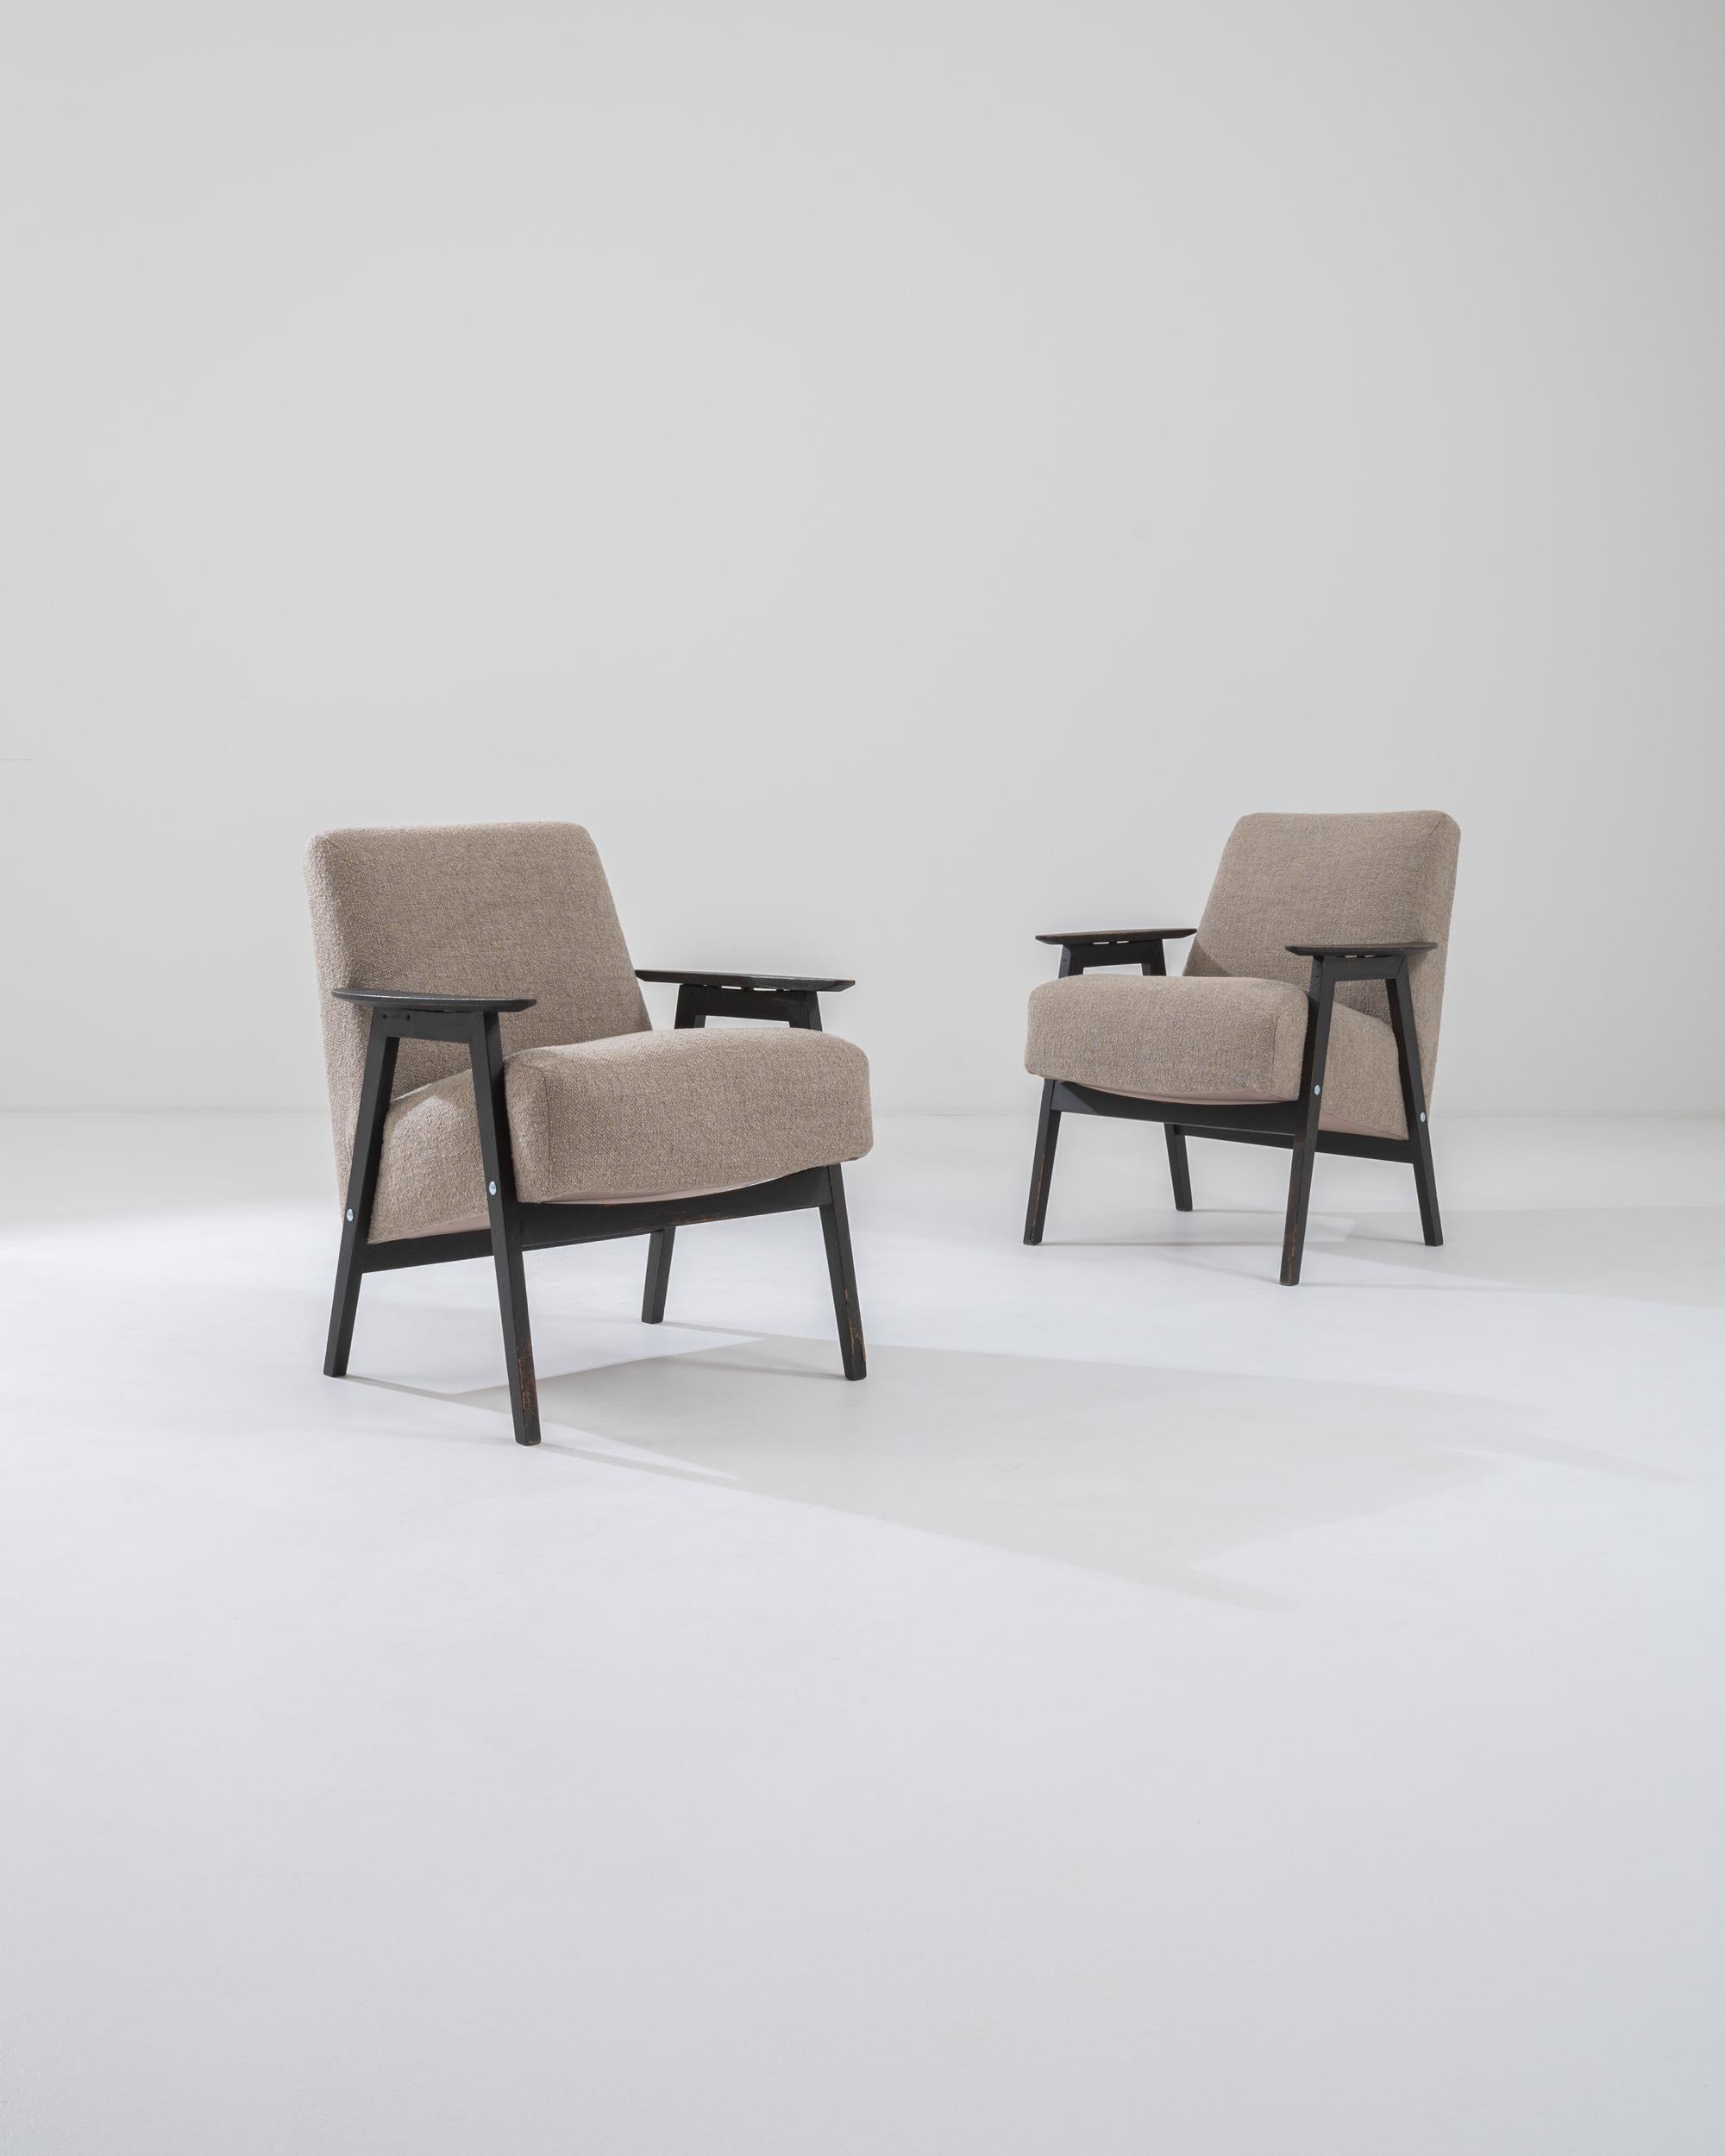 Cette paire de fauteuils des années 1960 incarne l'équilibre reposant du design moderniste tchèque. Les géométries audacieuses du cadre associent des lignes épurées à un équilibre harmonieux, tandis que la position inclinée de l'assise généreusement